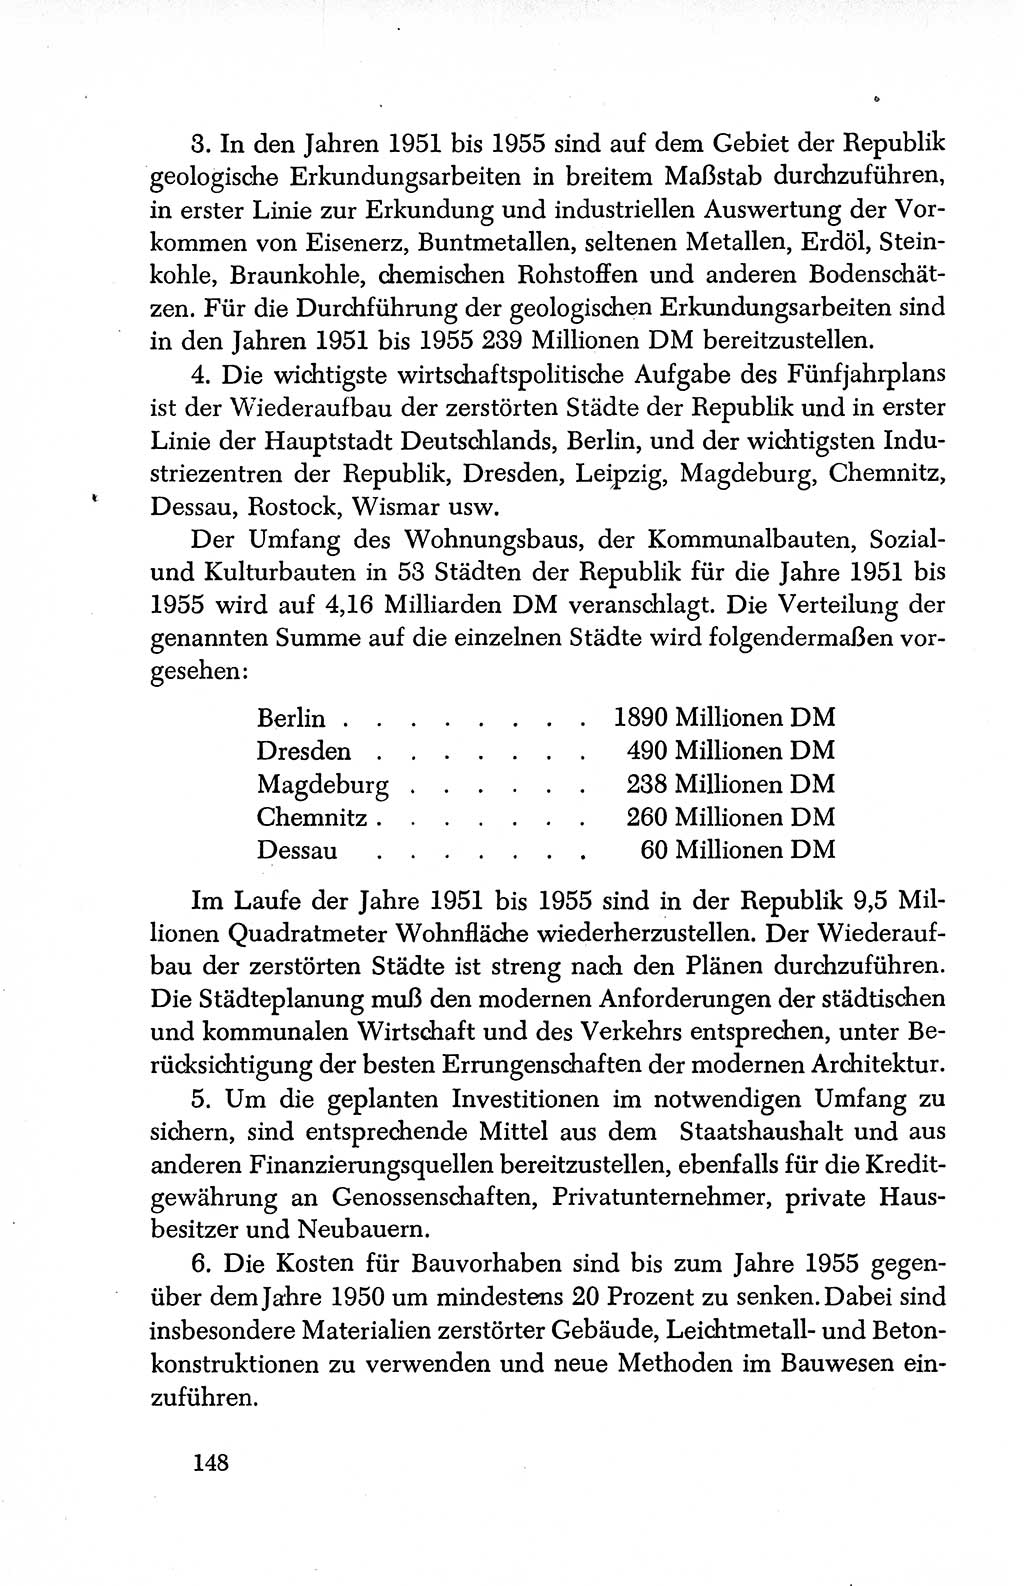 Dokumente der Sozialistischen Einheitspartei Deutschlands (SED) [Deutsche Demokratische Republik (DDR)] 1950-1952, Seite 148 (Dok. SED DDR 1950-1952, S. 148)